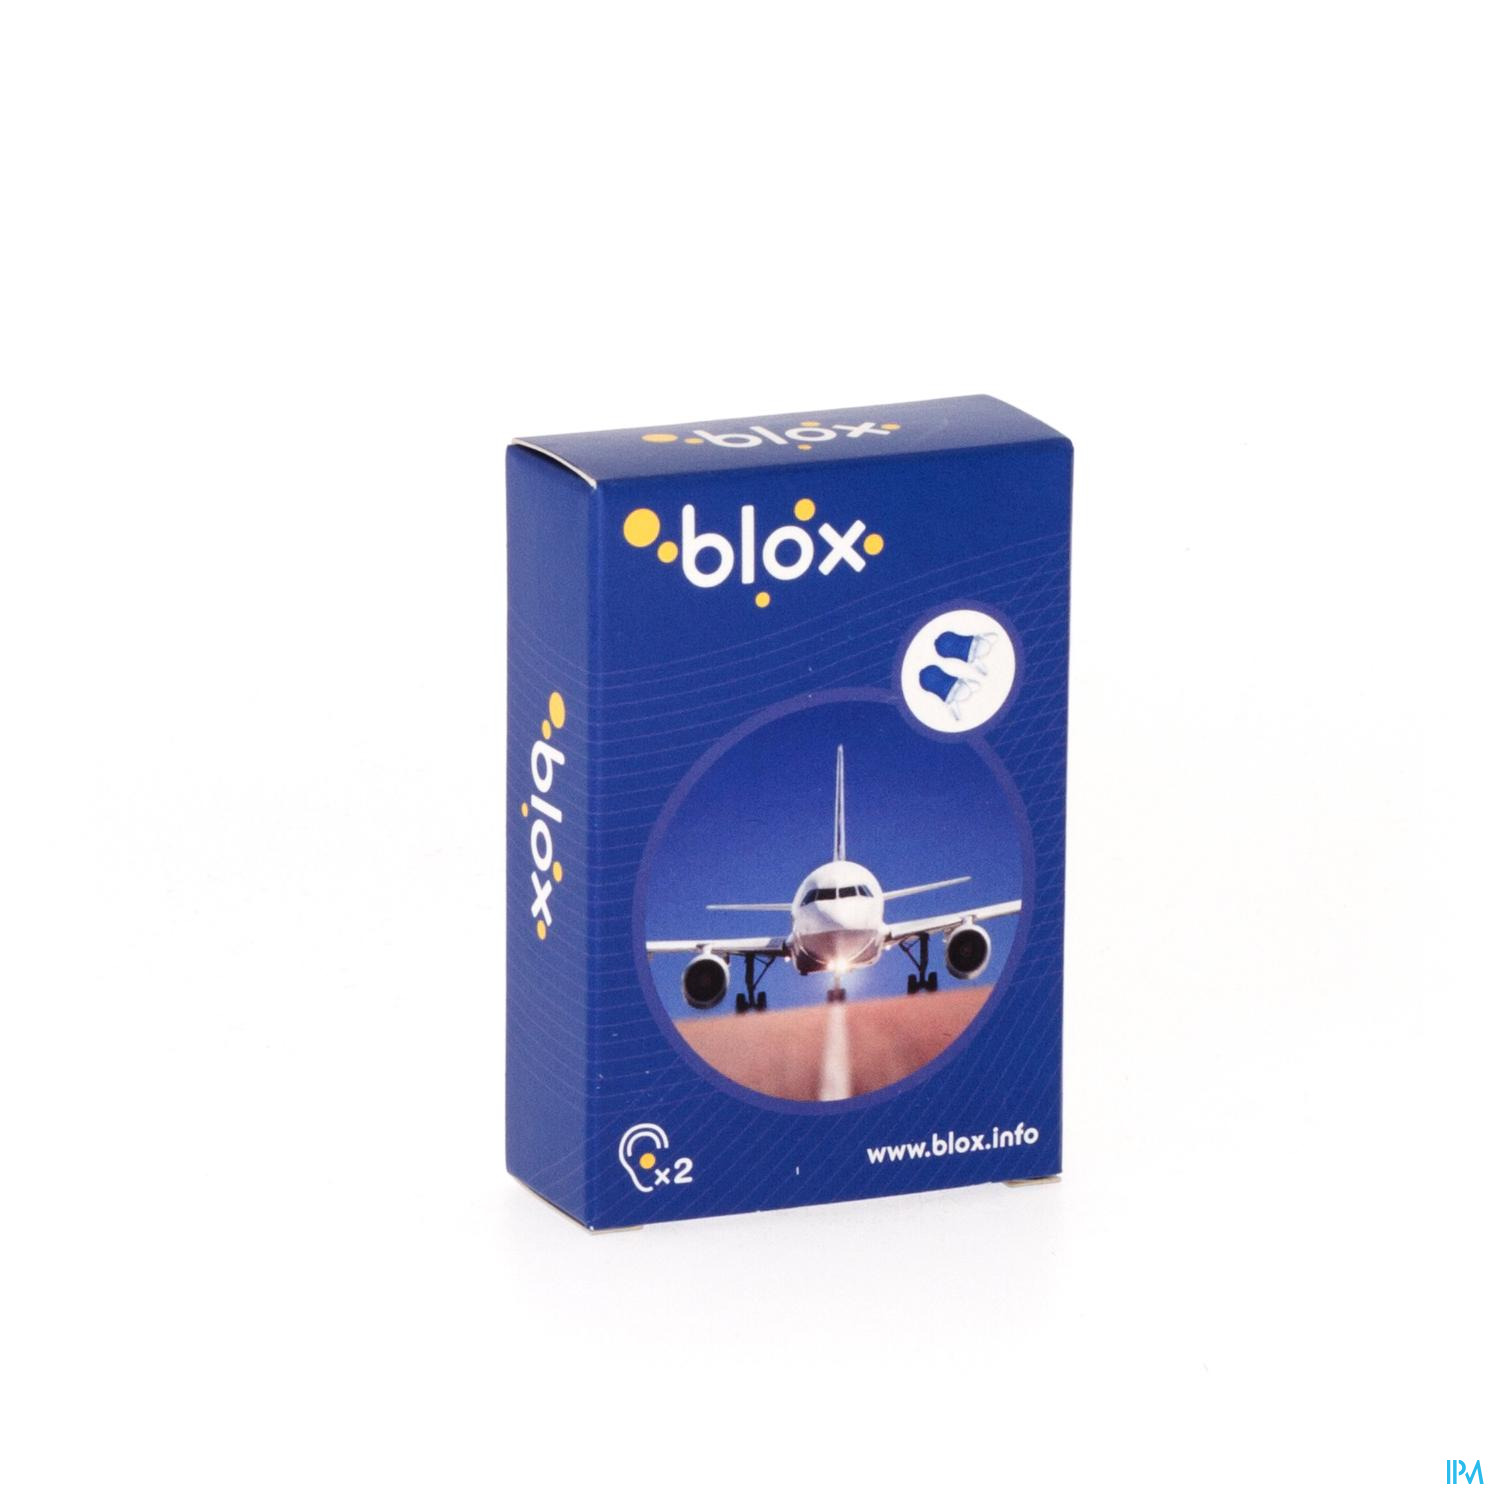 Blox Airplane 1 Pair A/Pressure Earplugs